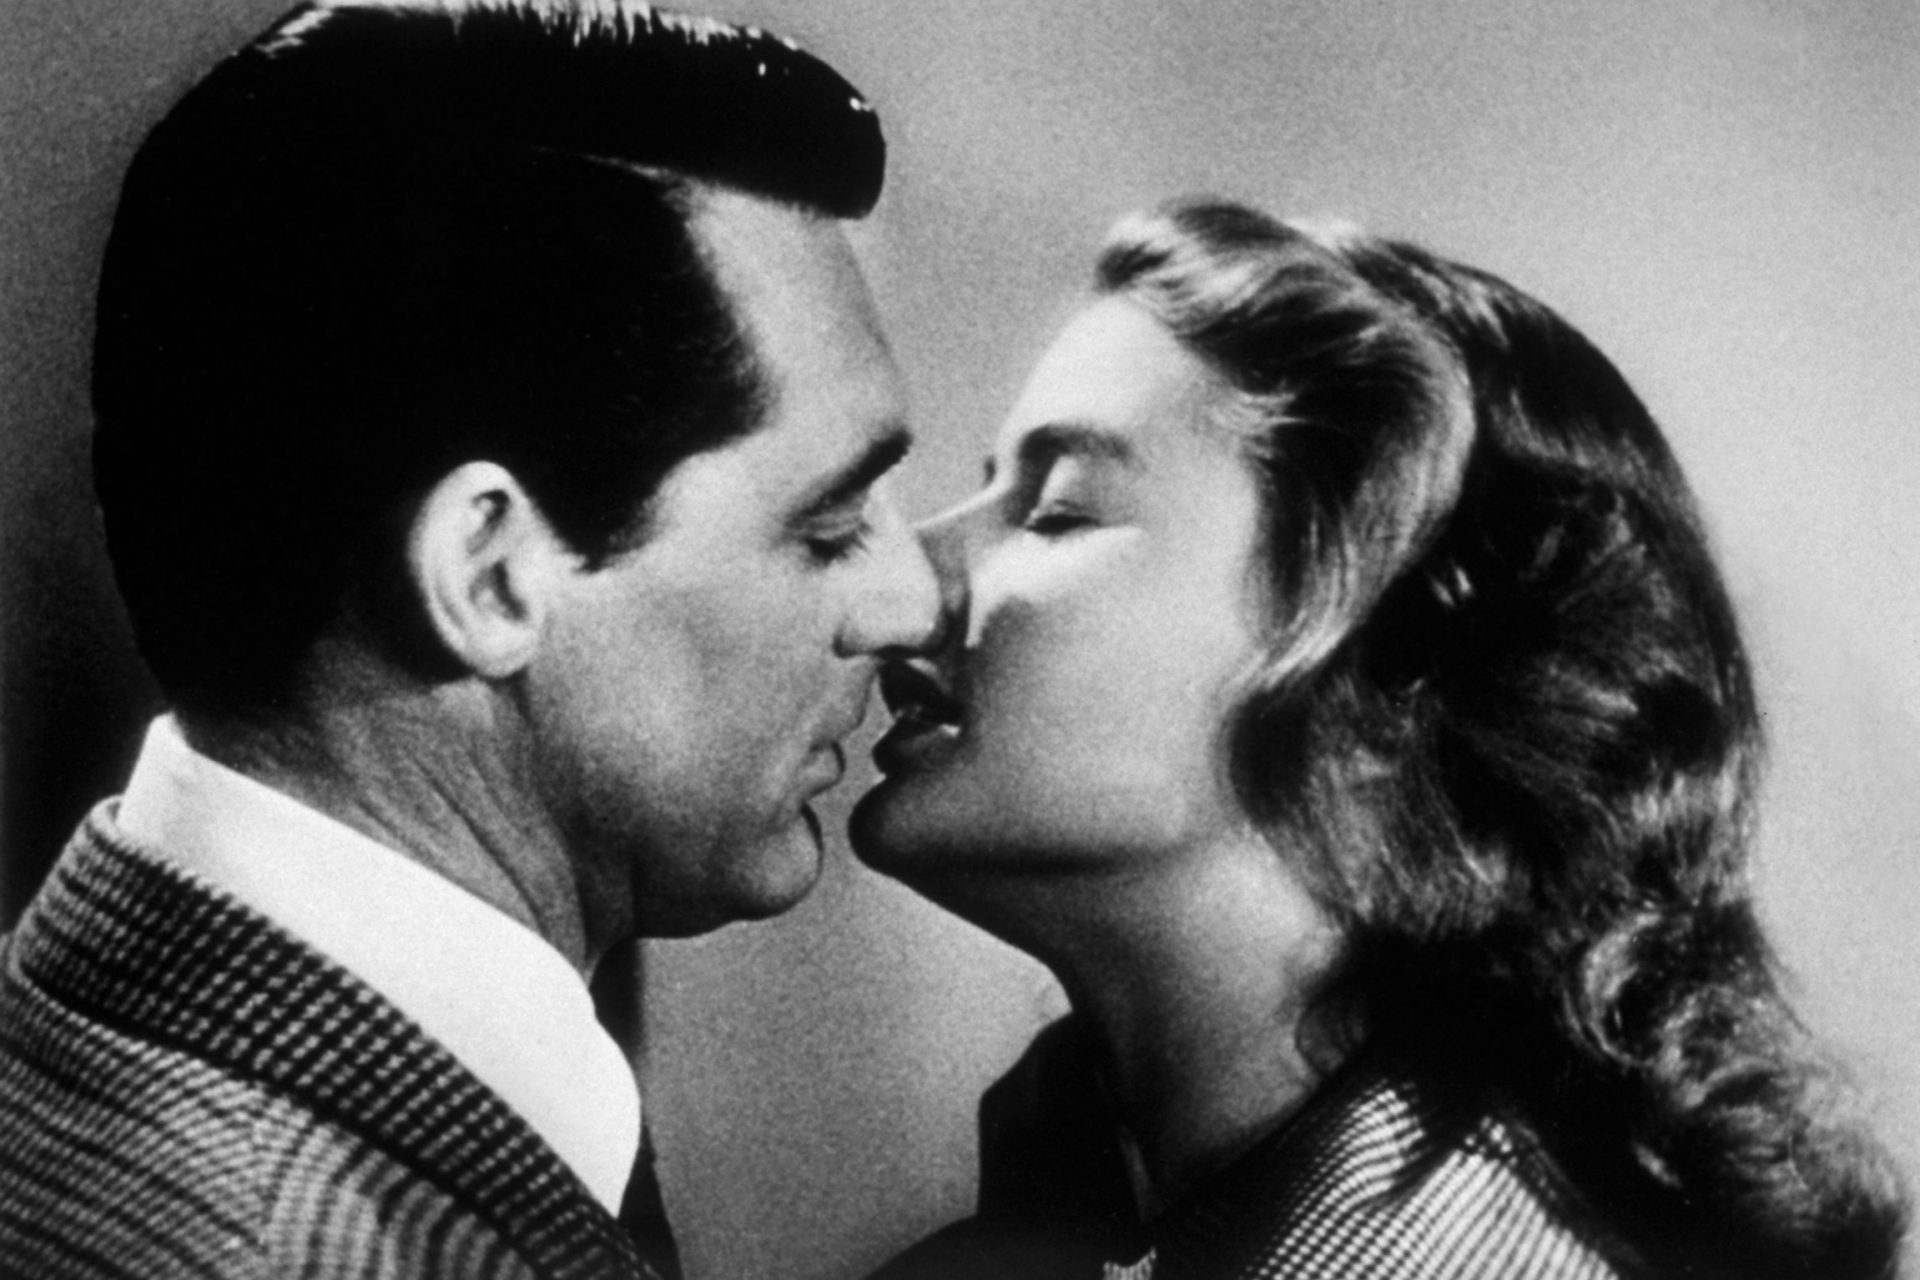 Ingrid Bergman en “Notorious” (“Encadenados” / “Tuyo es mi corazón” - 1946)